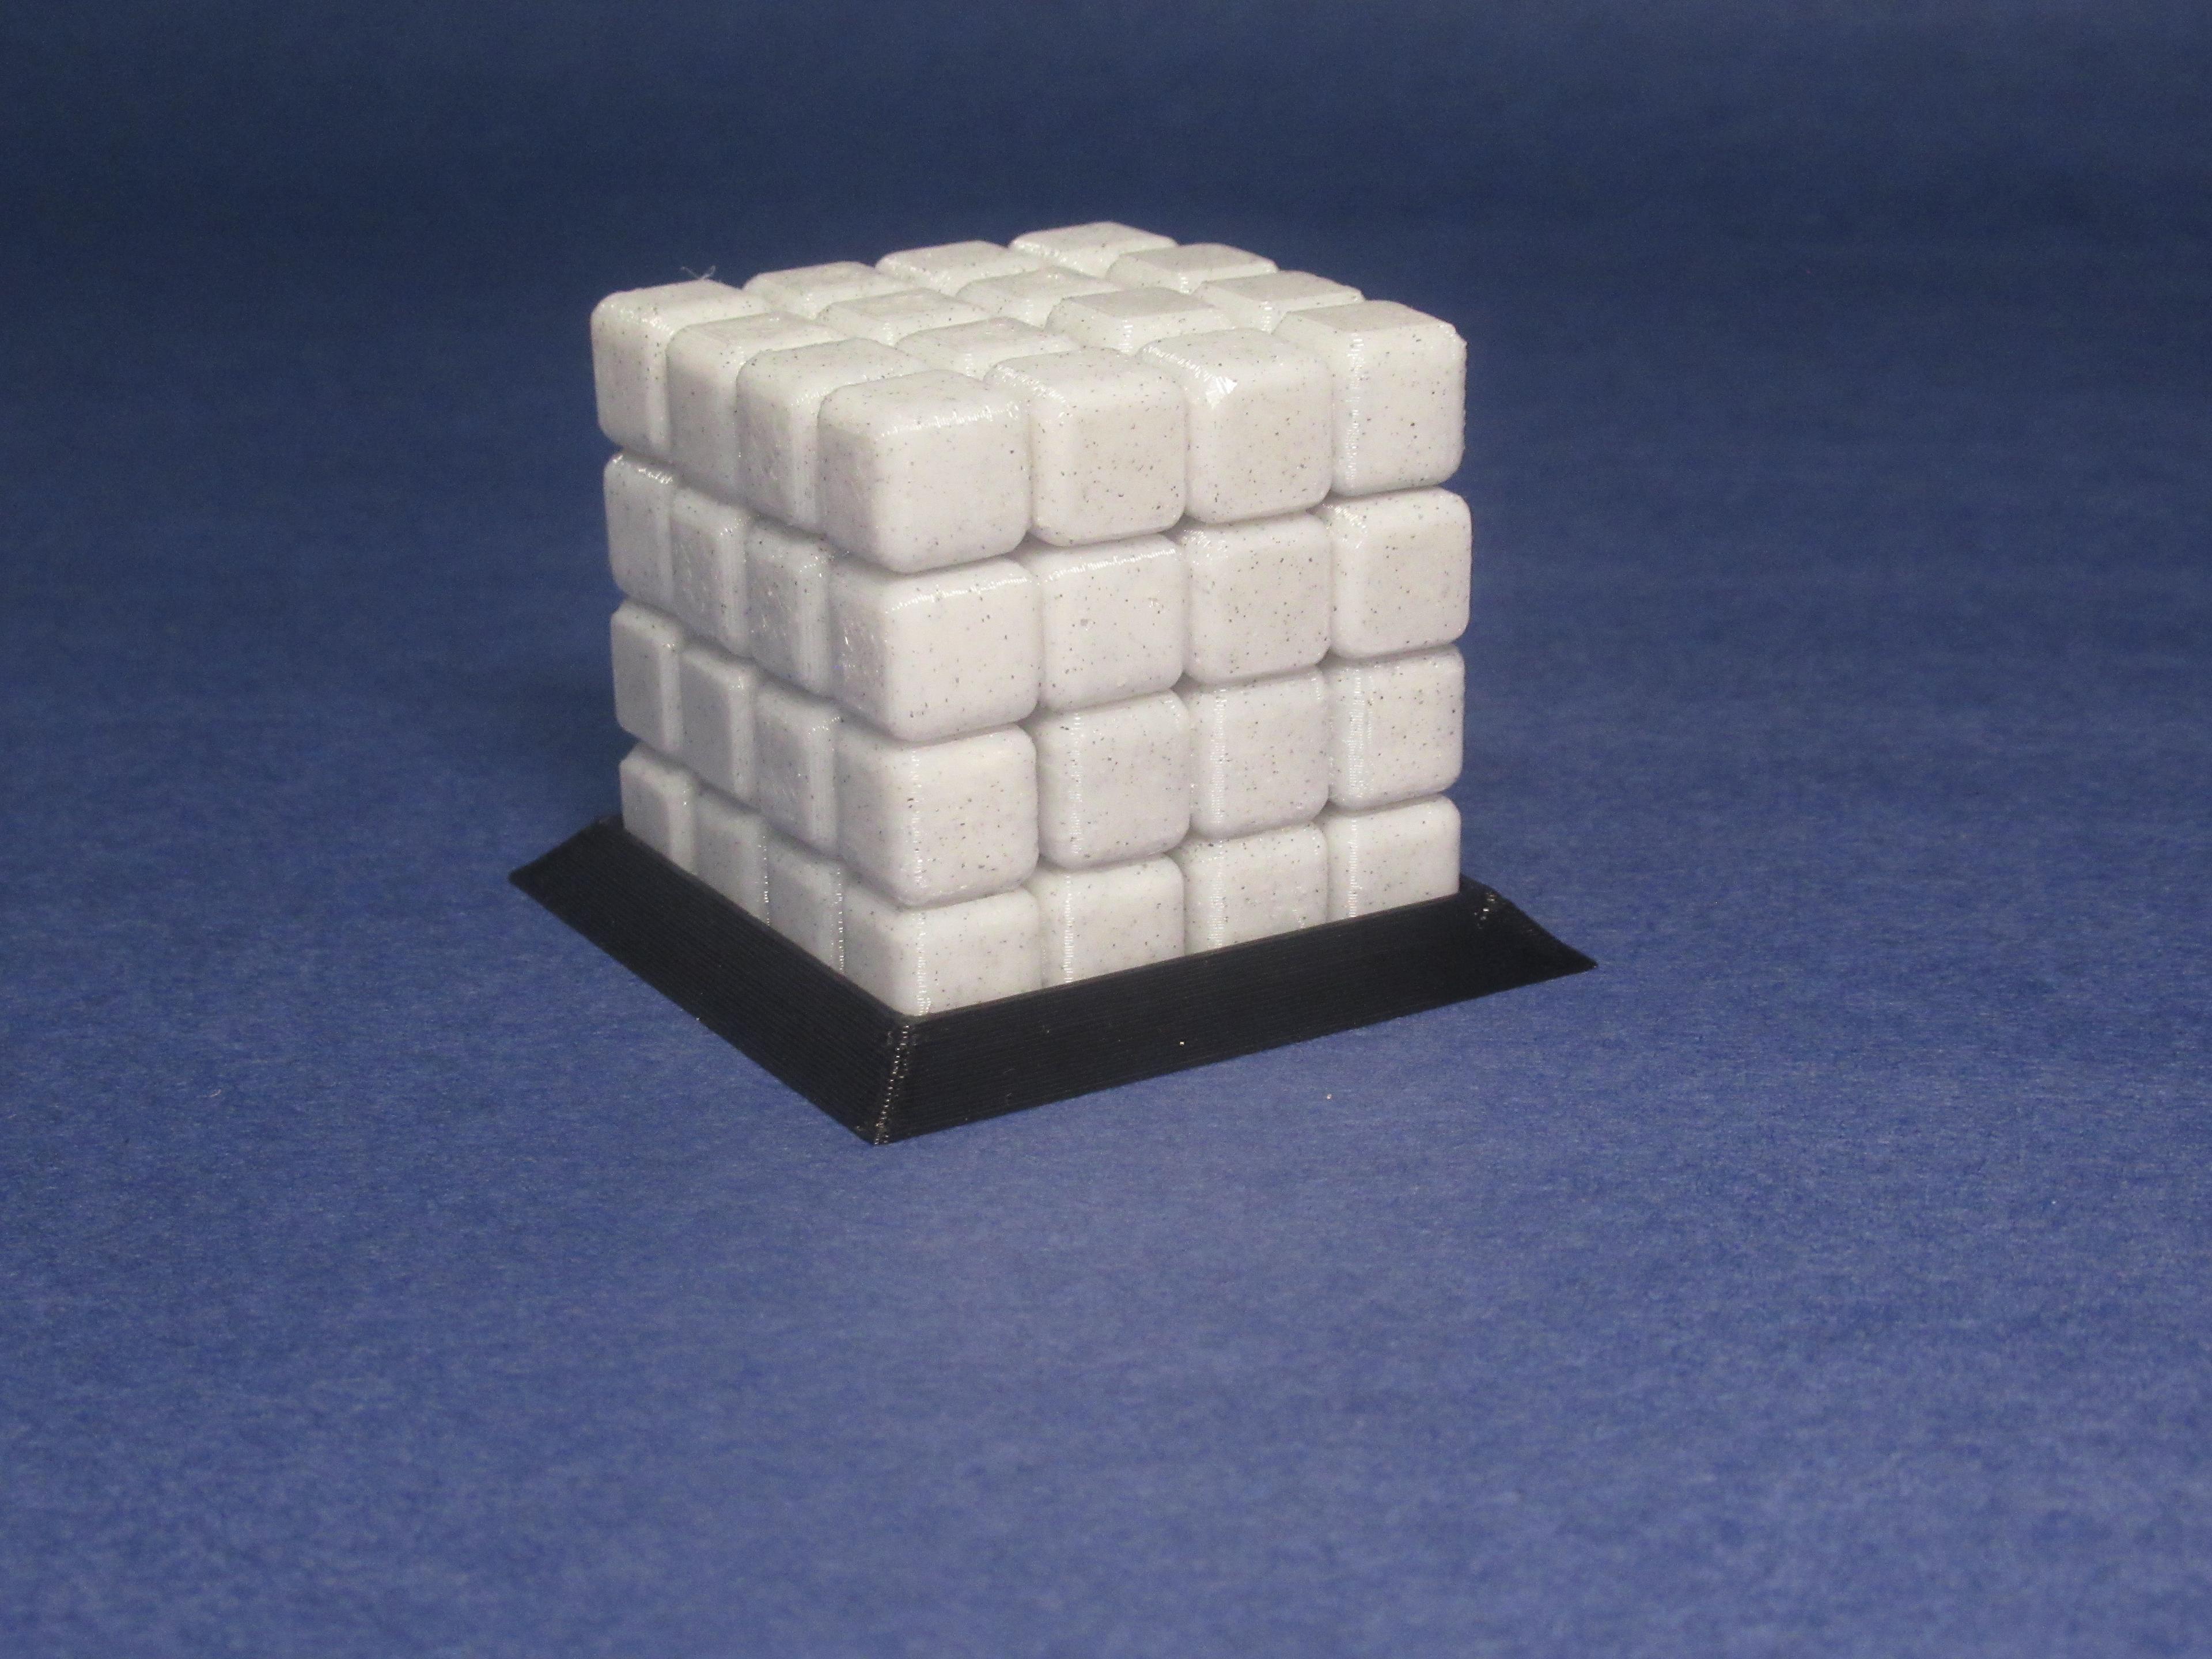 4x4 Puzzle Cube "Bedlam" 3d model